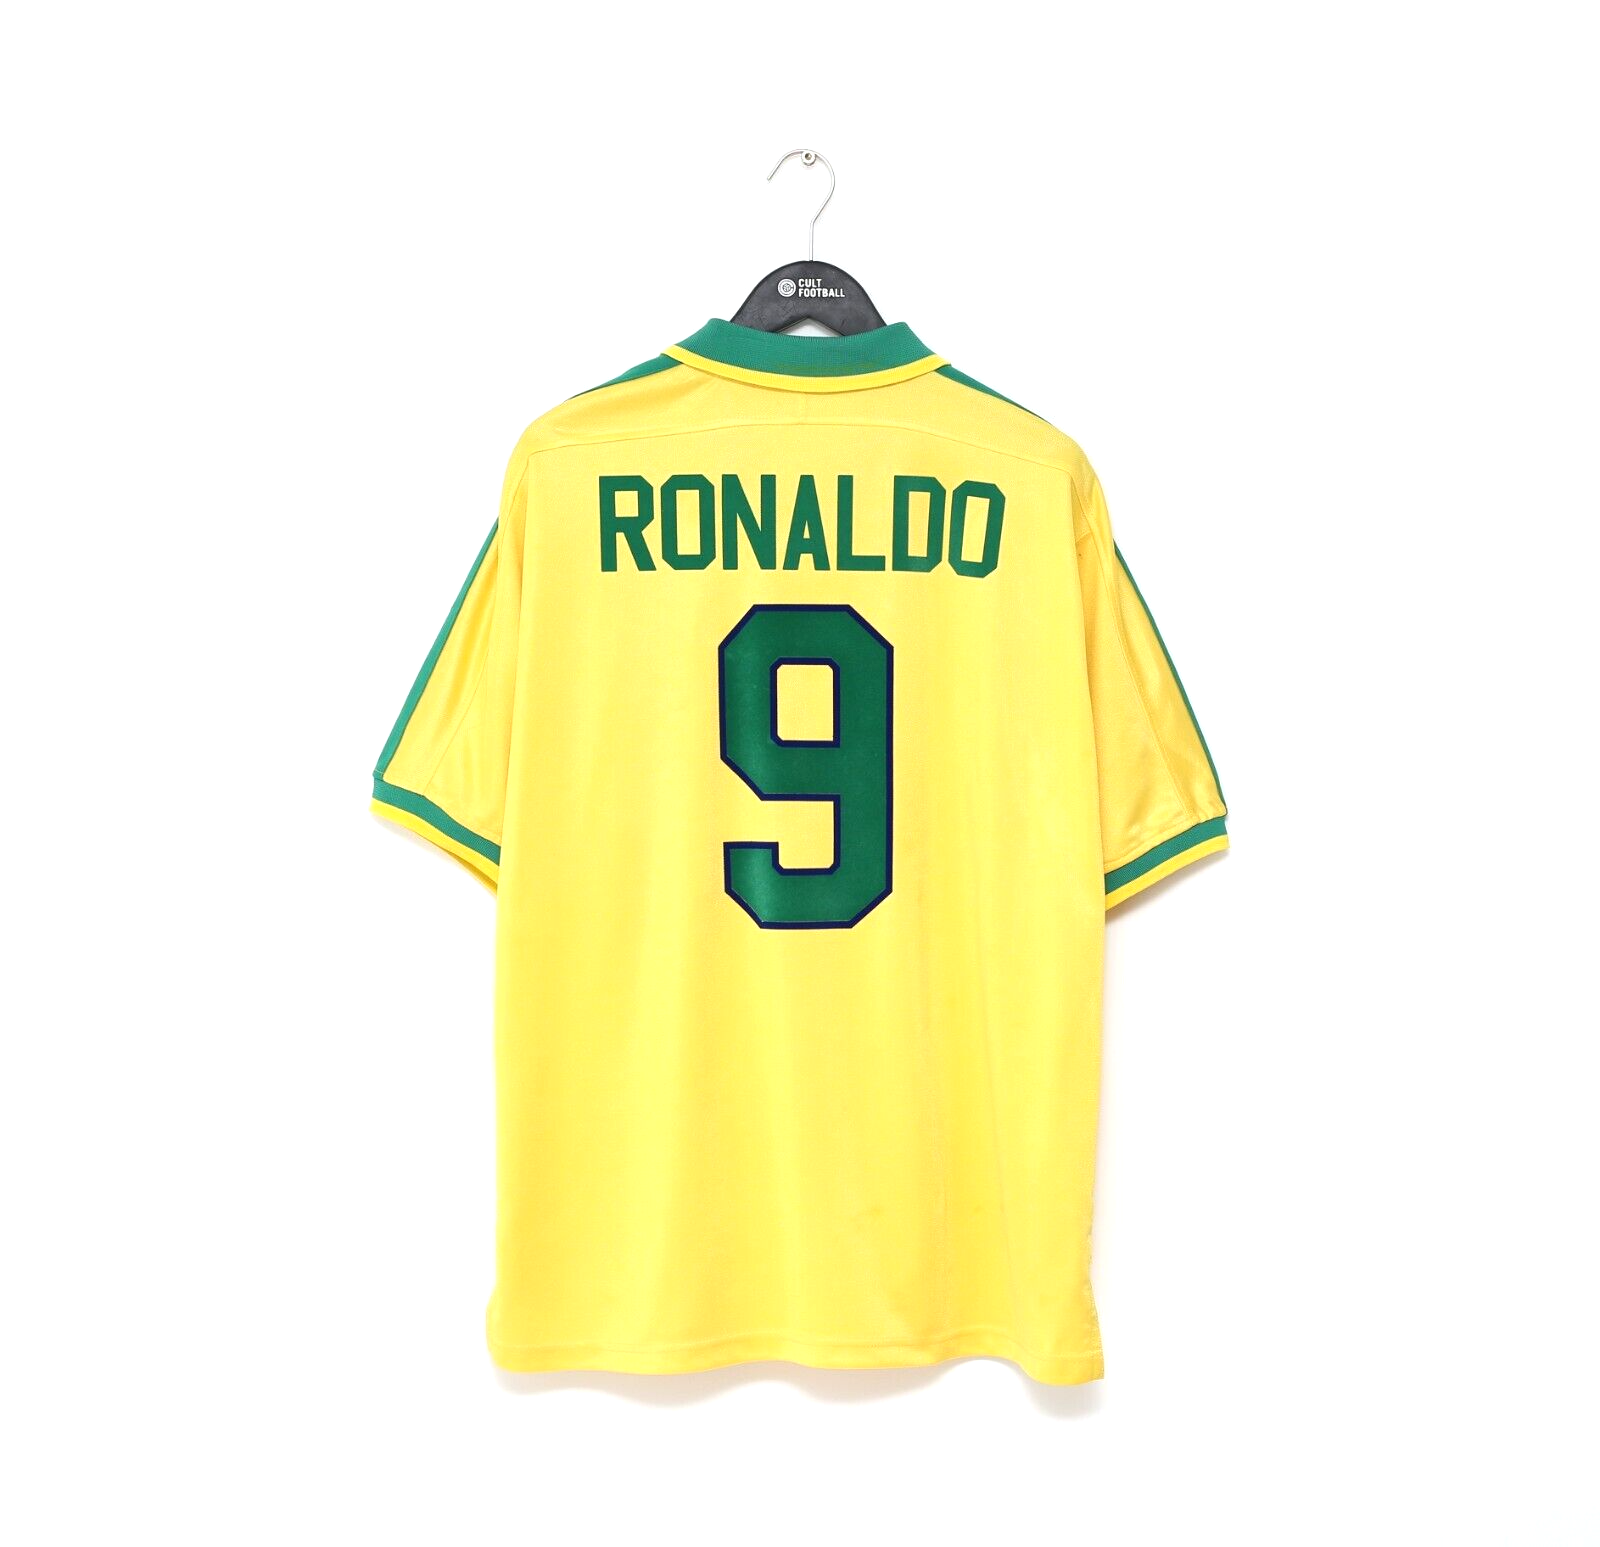 Brasil Retro Soccer Jerseys Ronaldo 1957 85 88 91 93 94 98 00 02